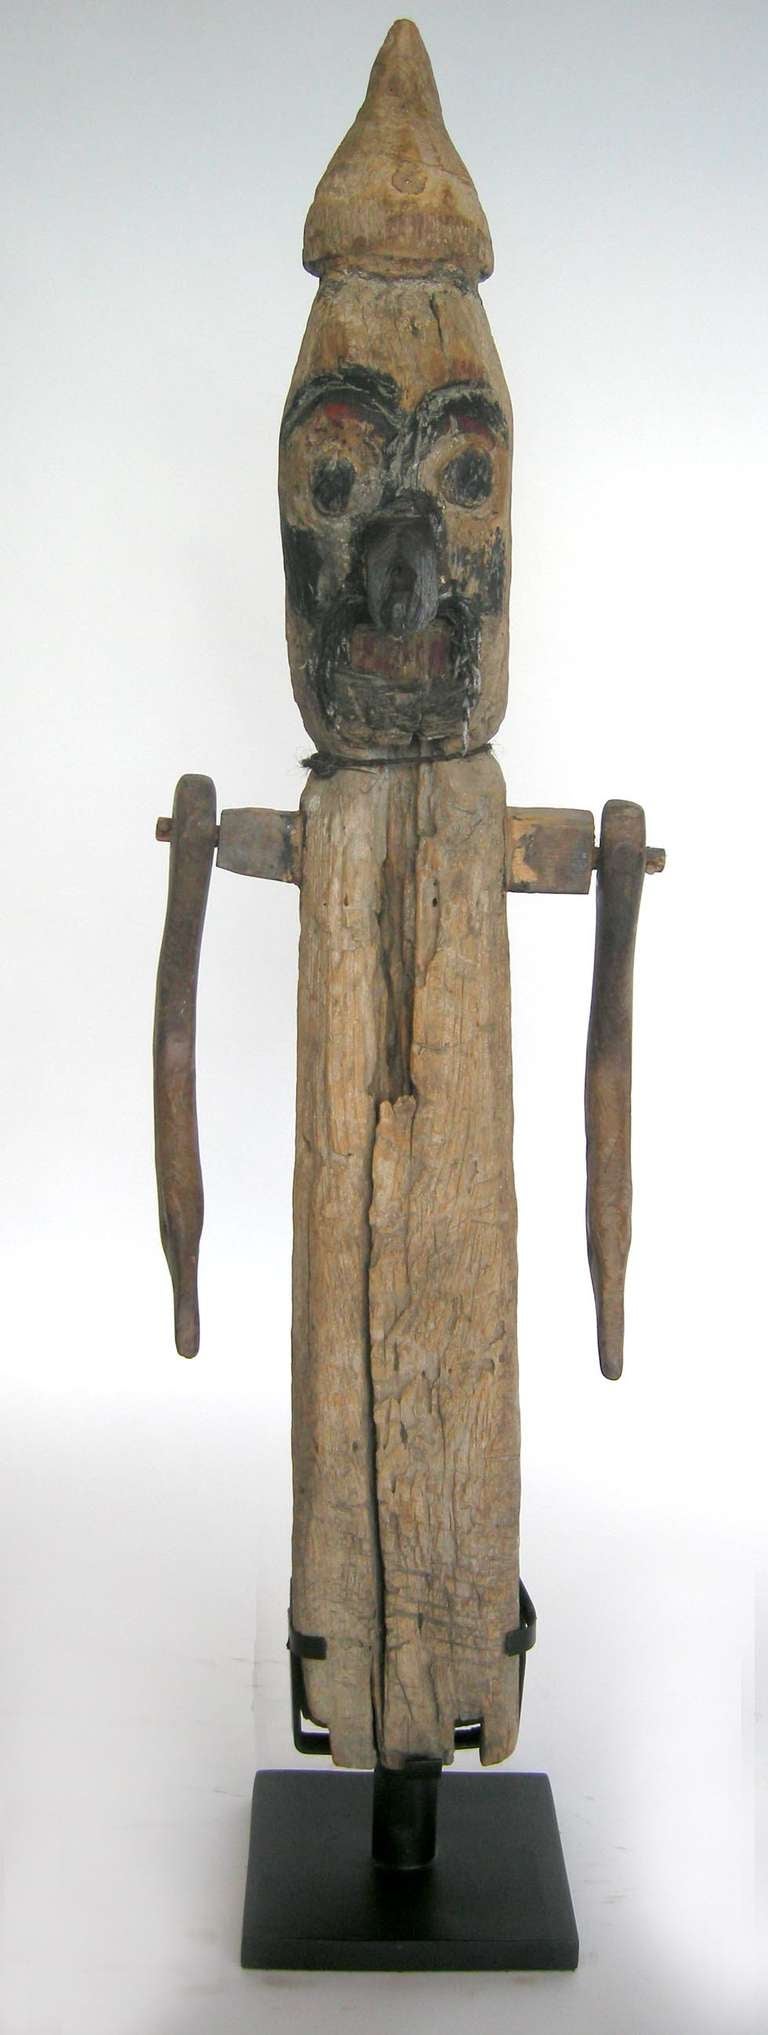 Grande corneille effarouchée antique en bois utilisée dans une rizière de Bali. Les bras se balancent. Un grand personnage et une pièce d'art populaire ! Sur socle en fer personnalisé